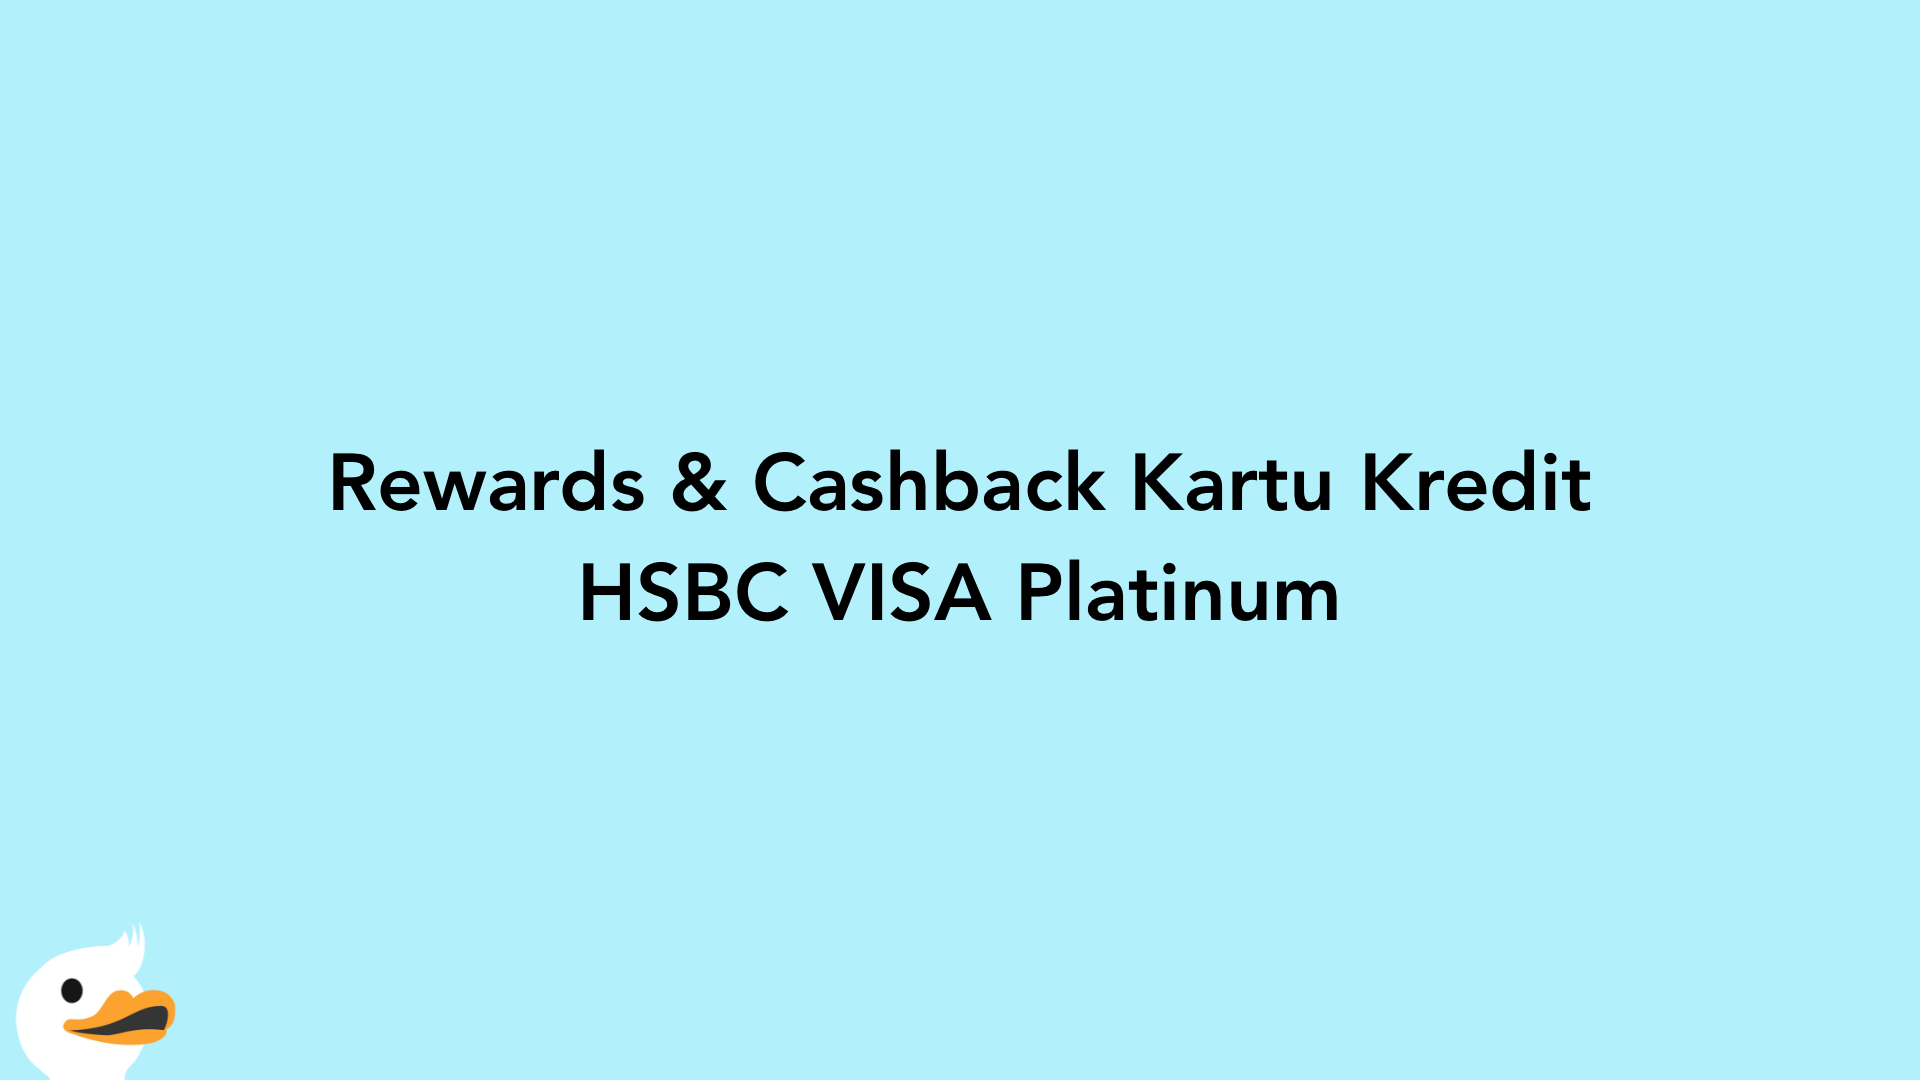 Rewards & Cashback Kartu Kredit HSBC VISA Platinum